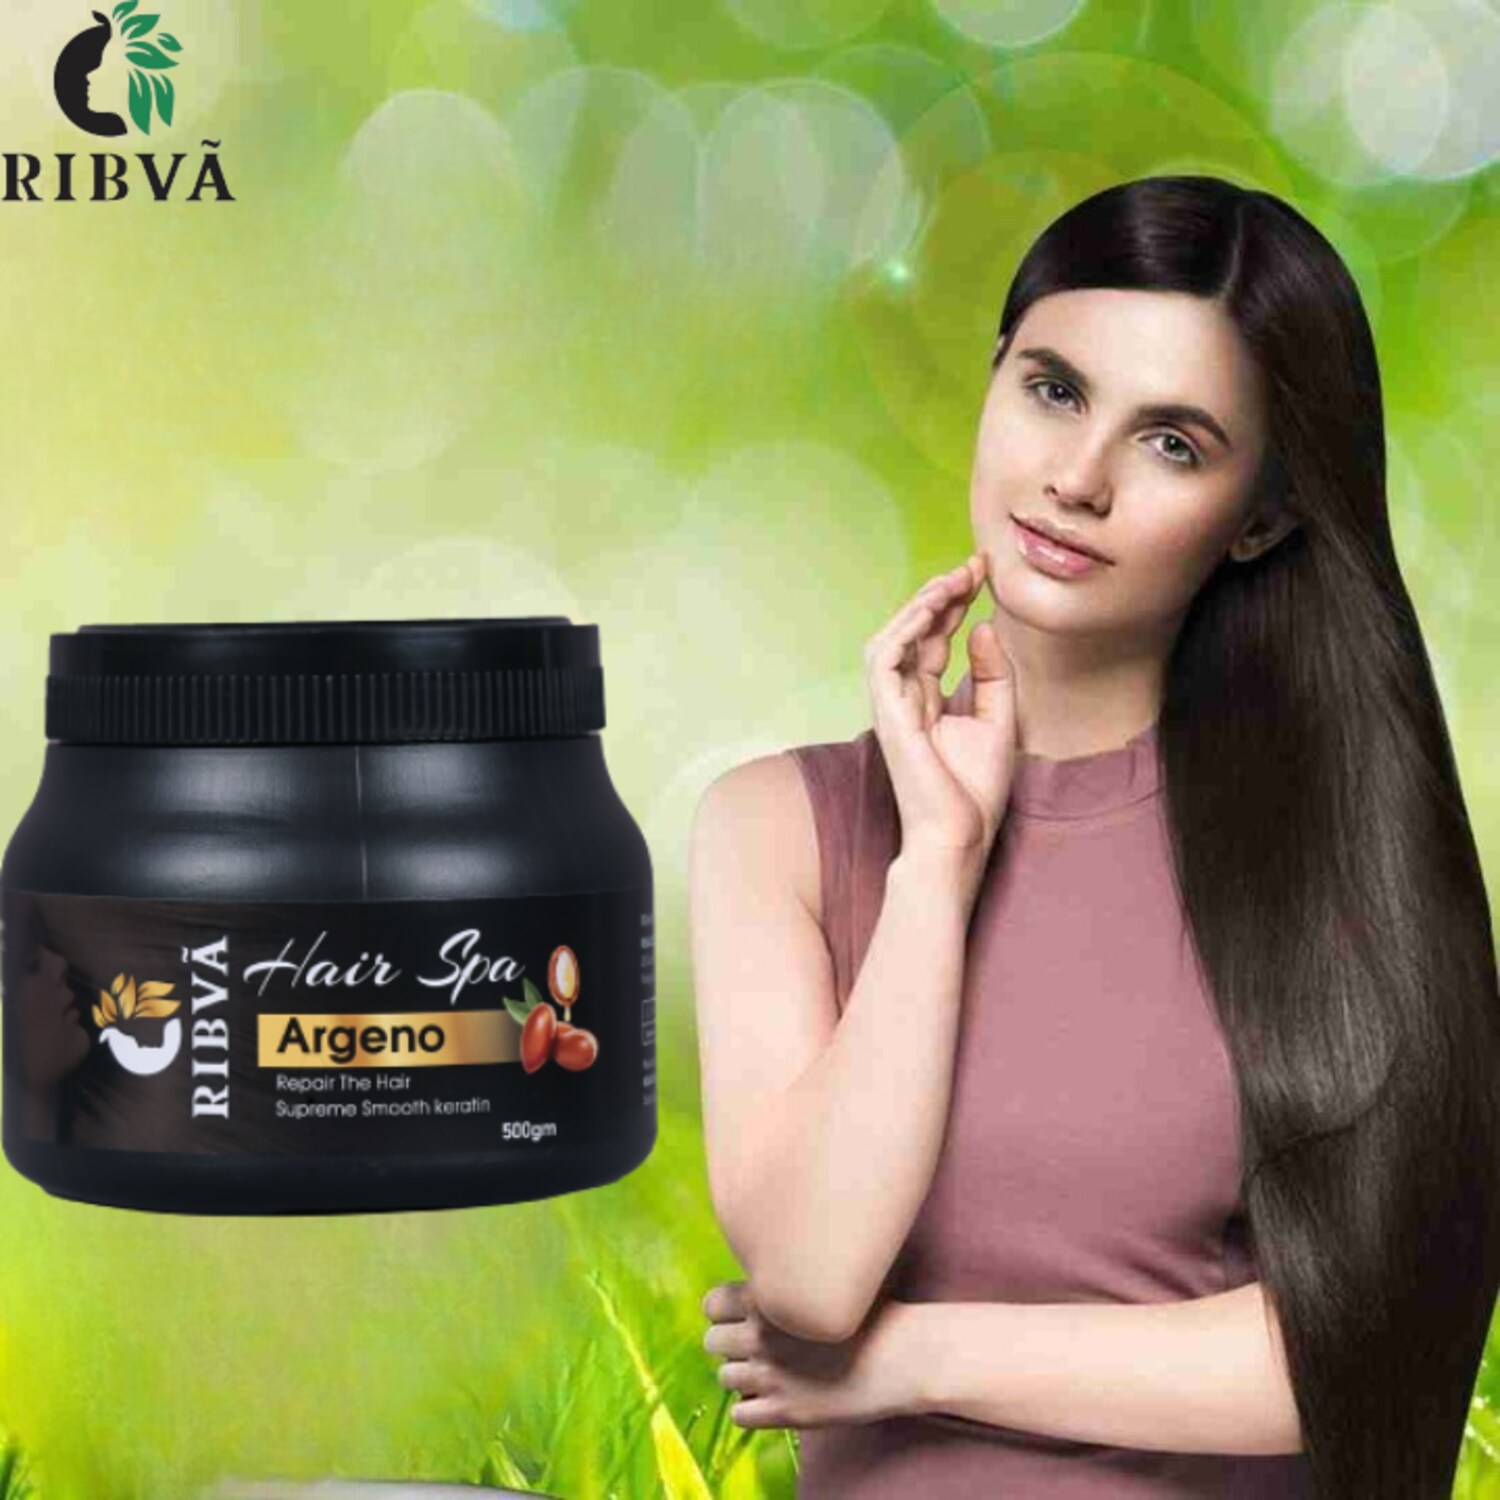 Ribva Professional Feel Hair Spa Treatment, Make Your Hair More Smooth,  (500gm) - JioMart